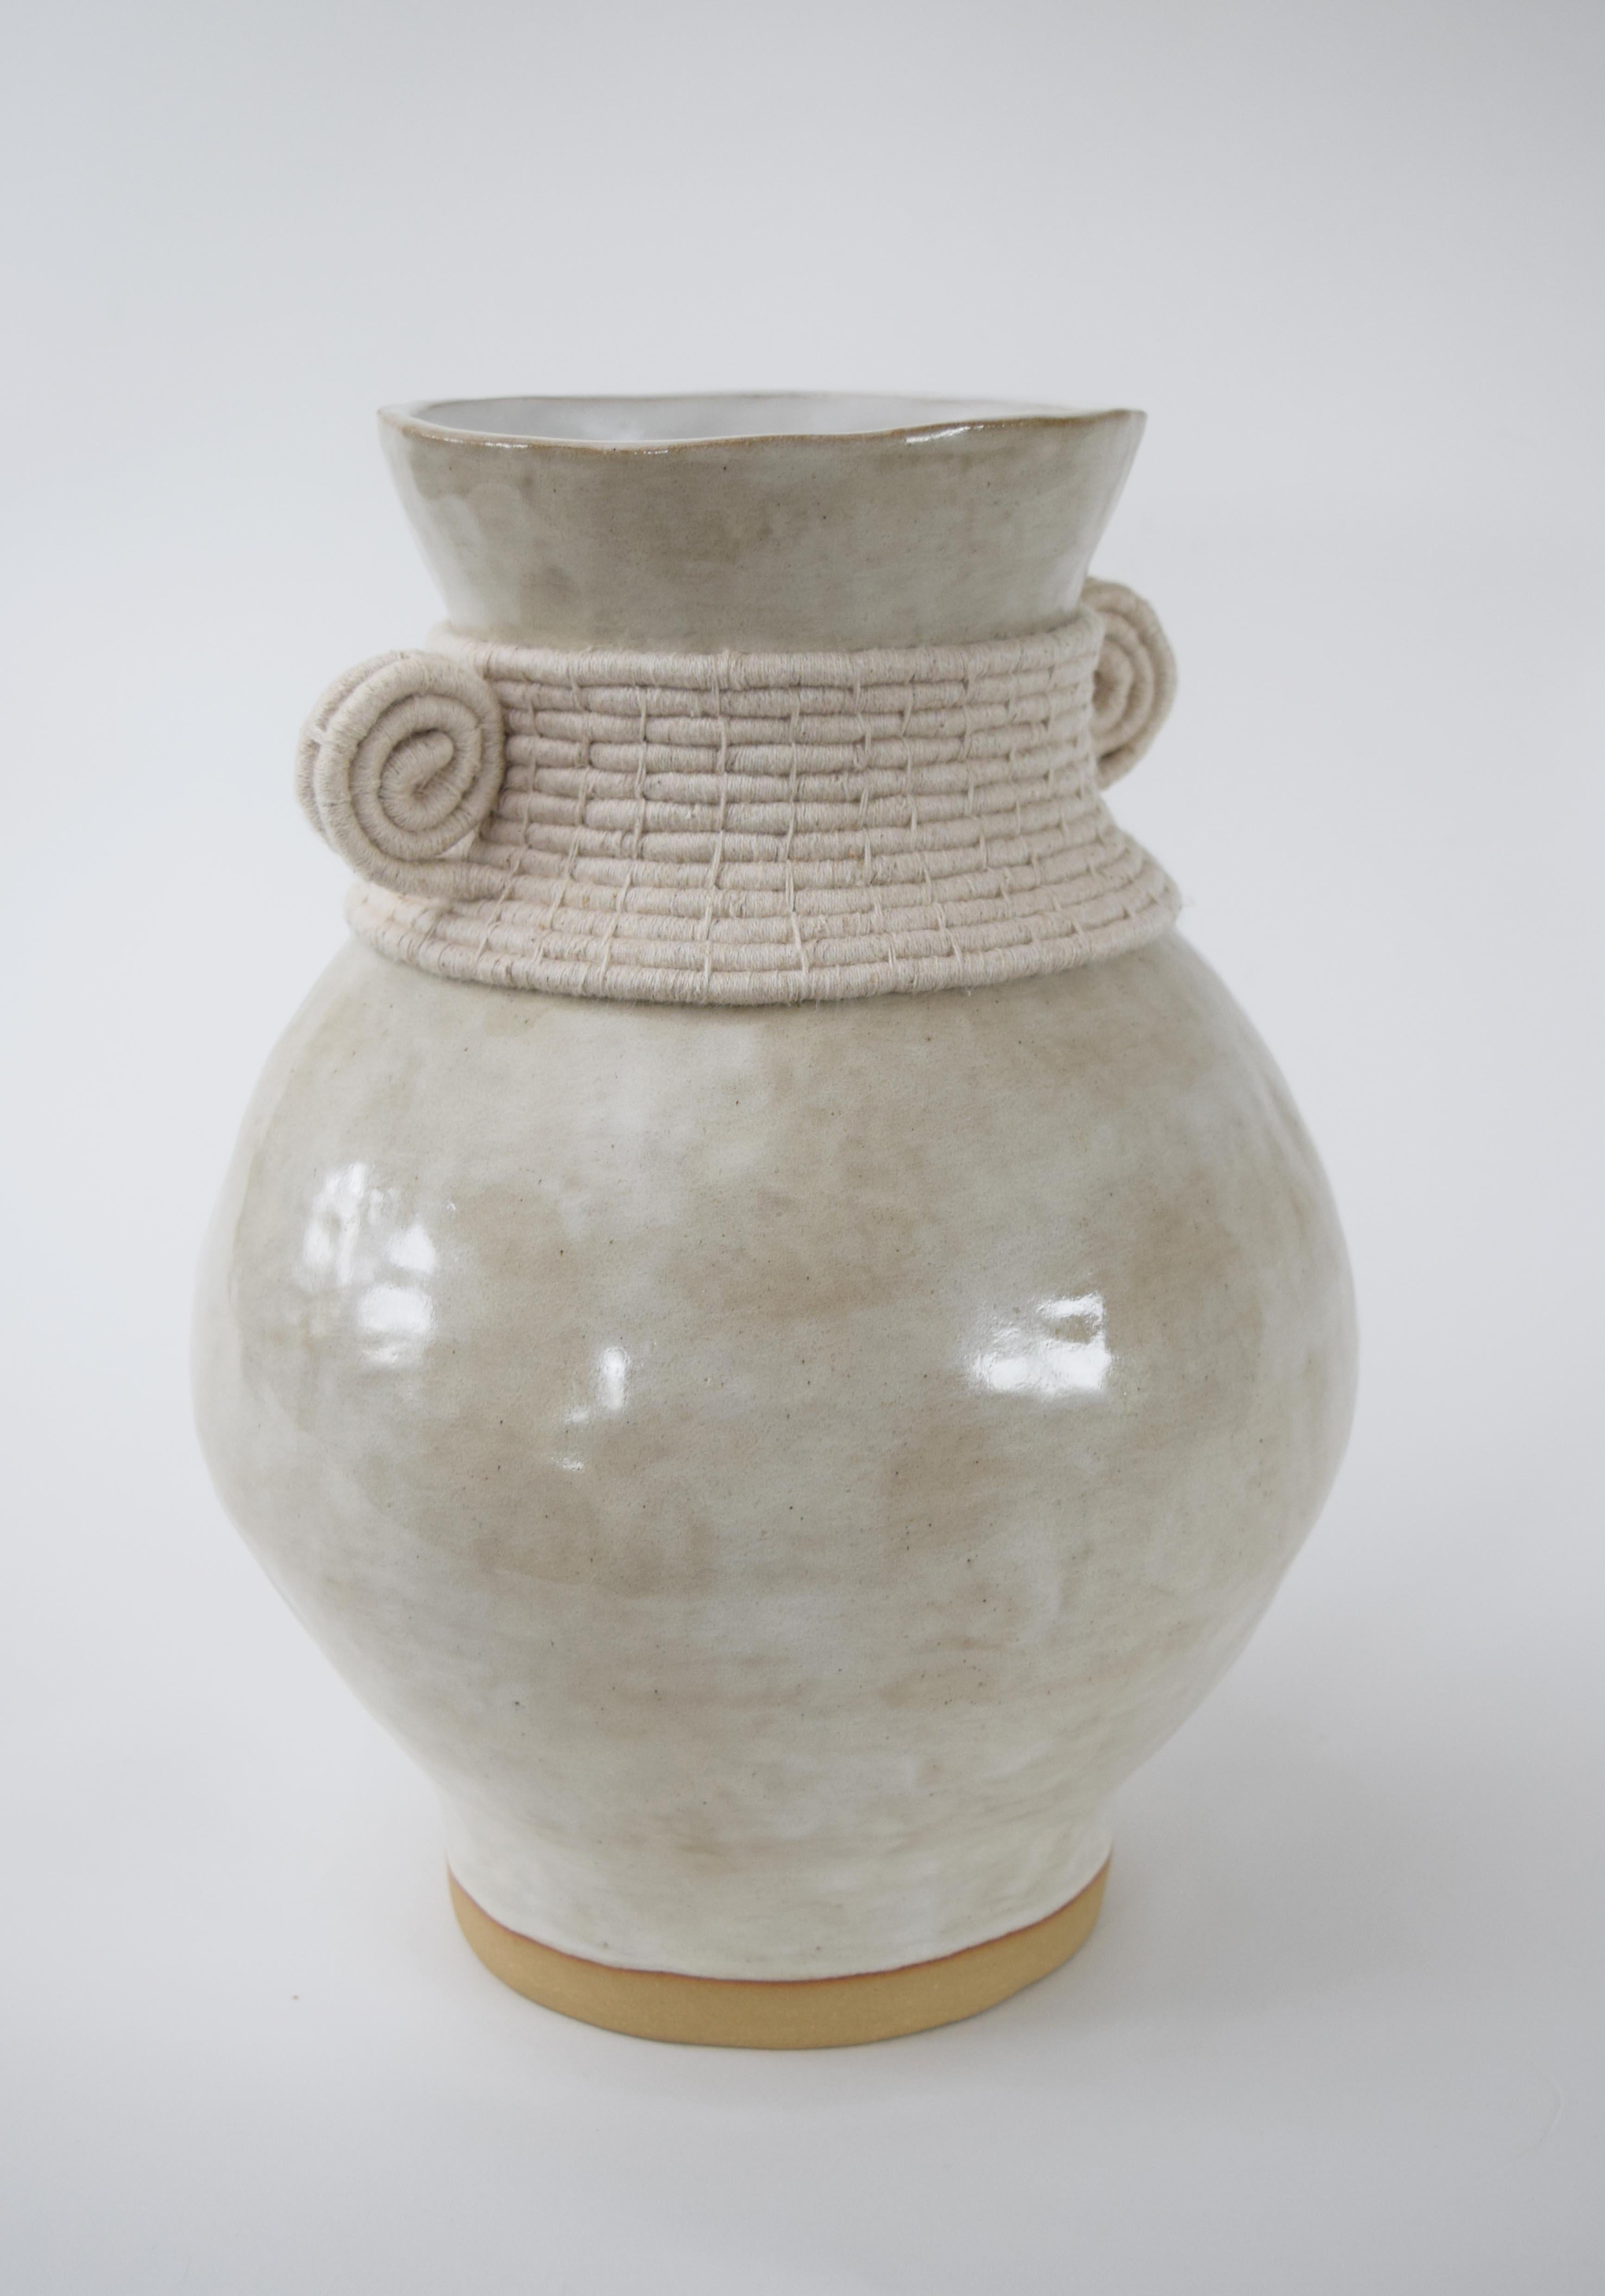 Vase #796 par Karen Gayle Tinney

Vase en grès formé à la main avec une glaçure blanc cassé. Détails en coton blanc cassé tissé sur le pourtour extérieur. L'intérieur du vase est émaillé, le vase peut contenir de l'eau.

13 